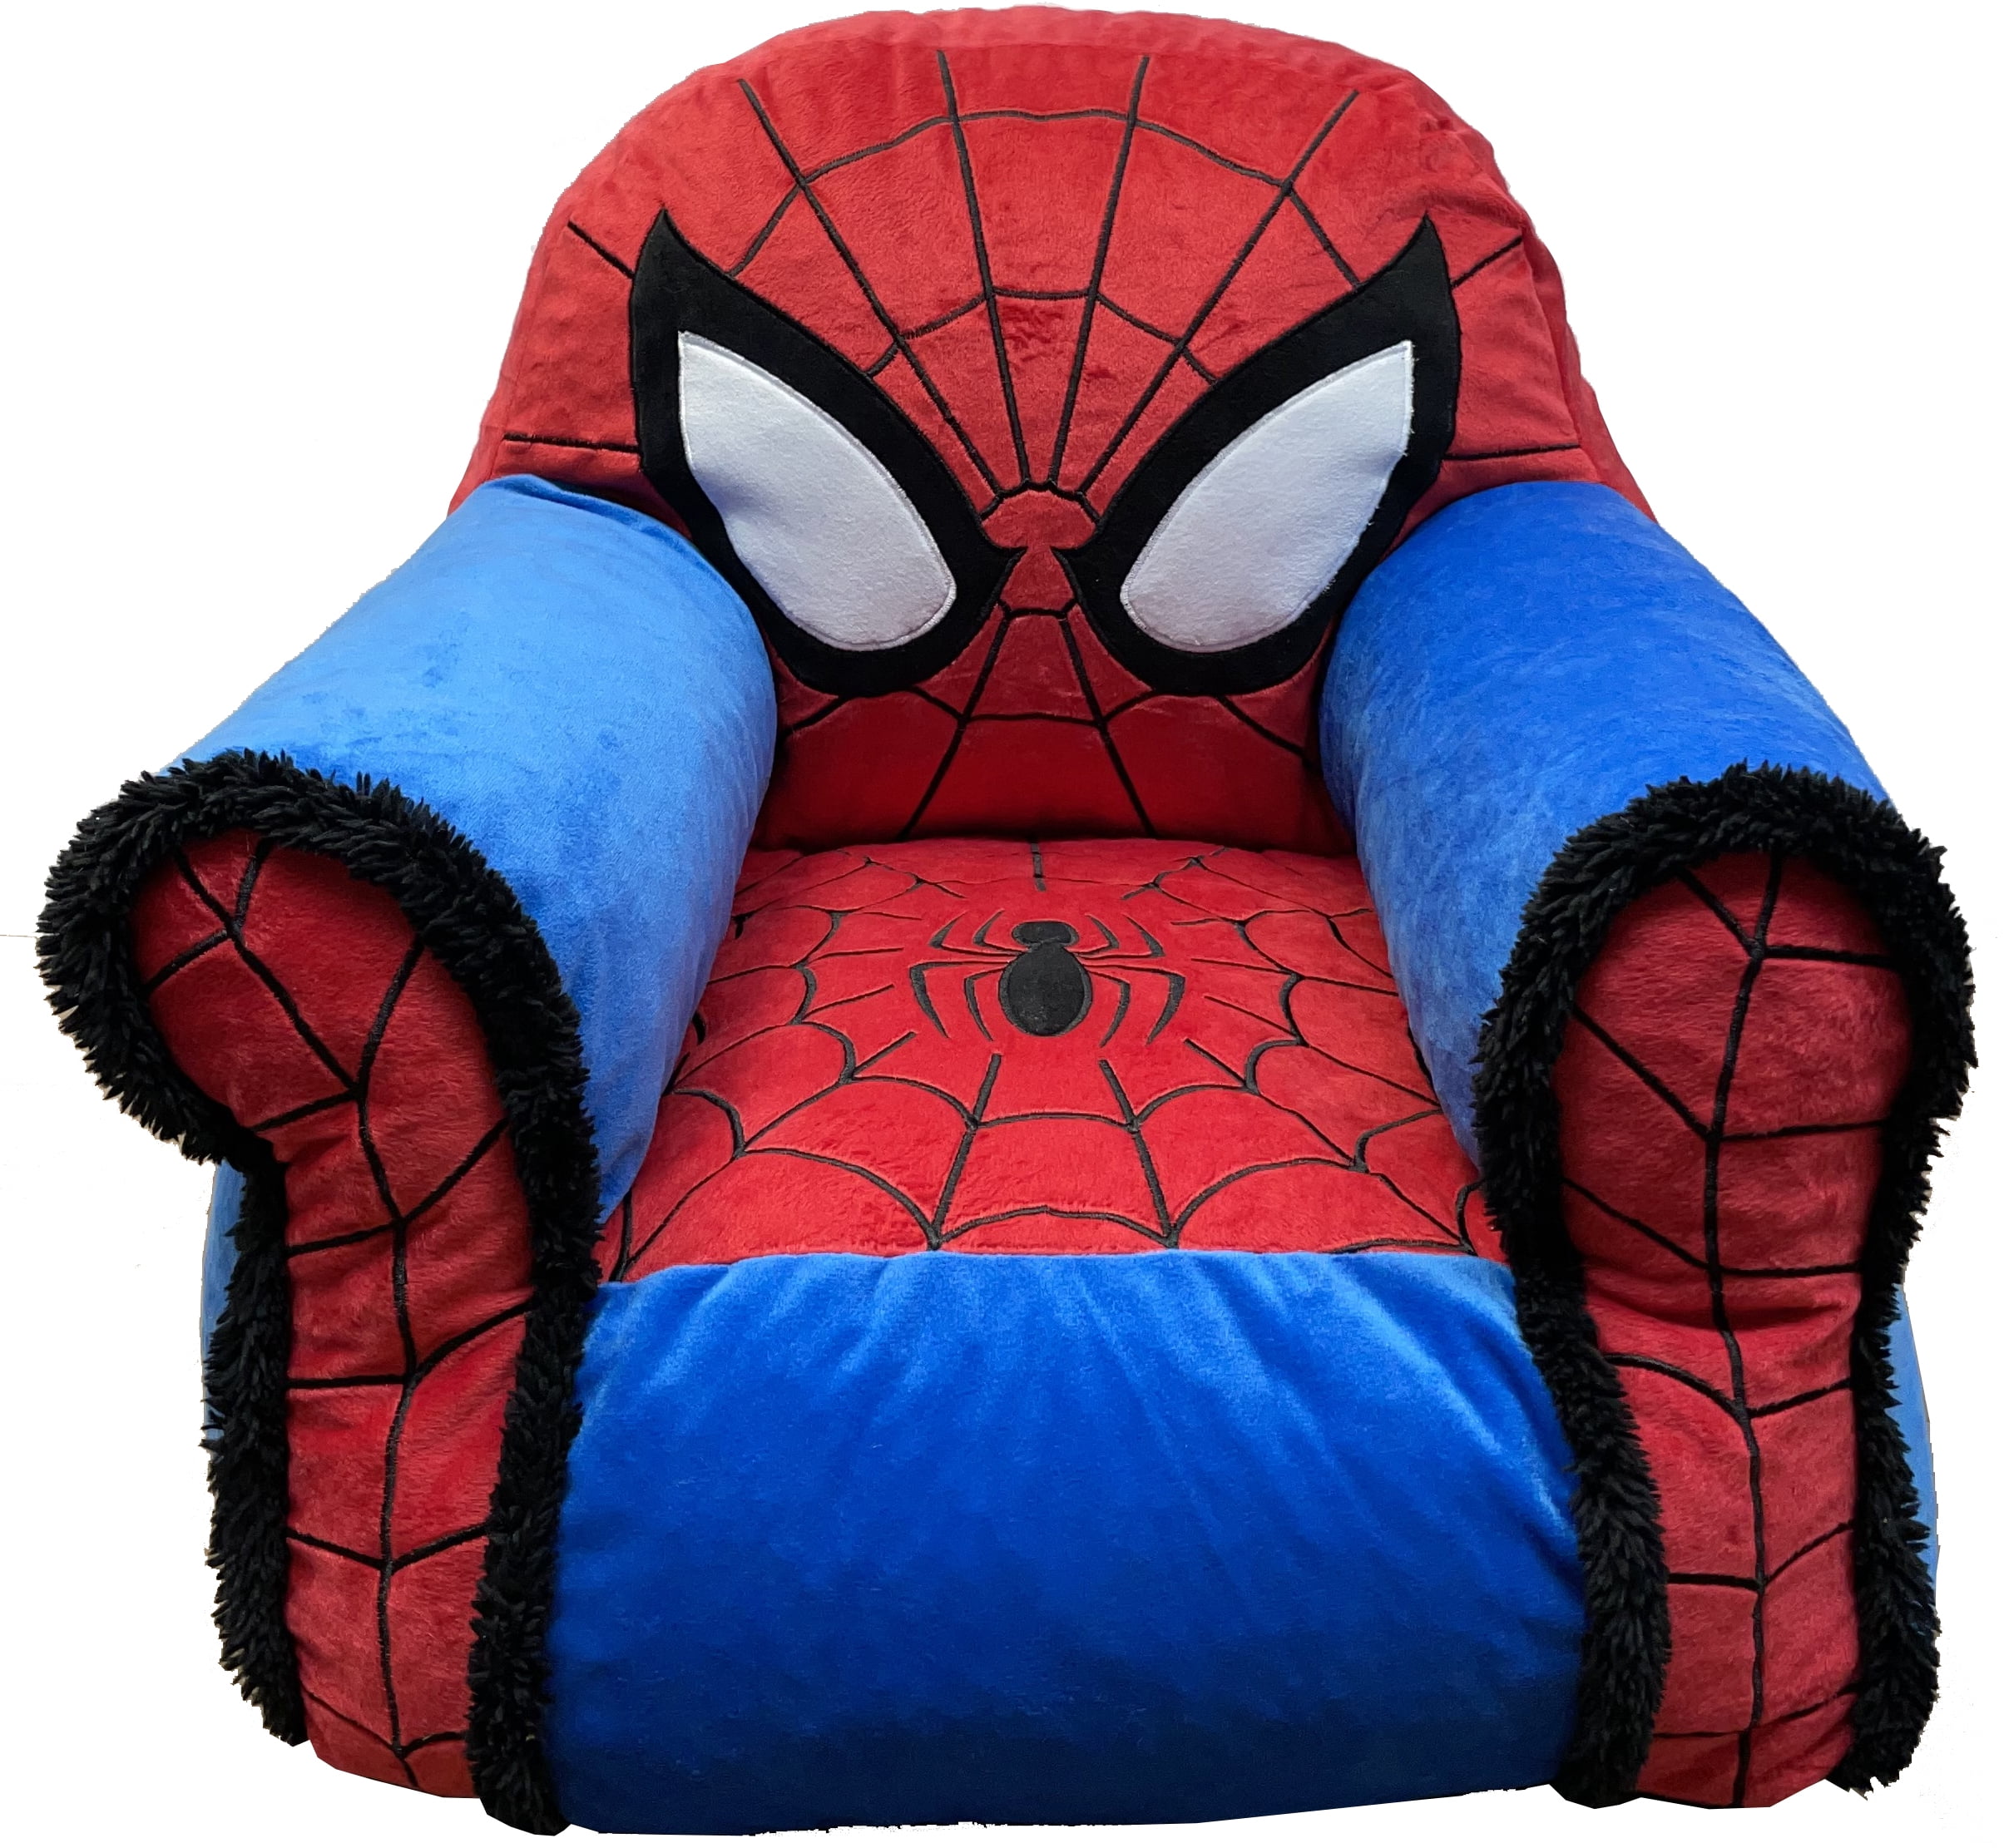 Ty Marvel-Figur "Spiderman" Comic Beanie Babies Plüschfigur Spider-Man 